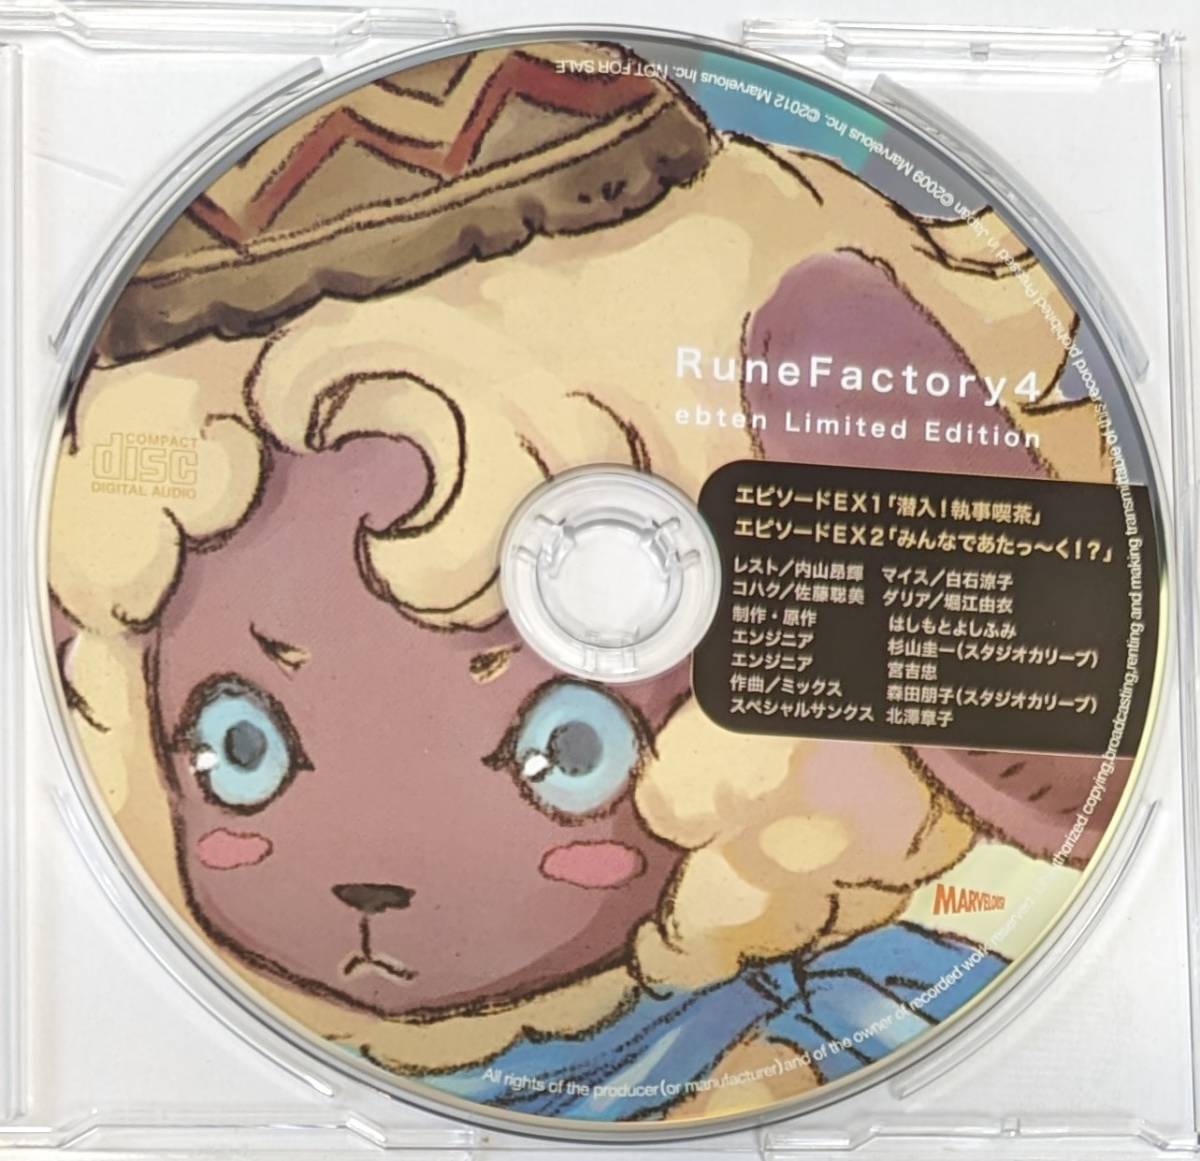 ルーンファクトリー4 Best Collection ebten 特典ドラマCD 「潜入!執事喫茶」 「みんなであたっ～く!?」